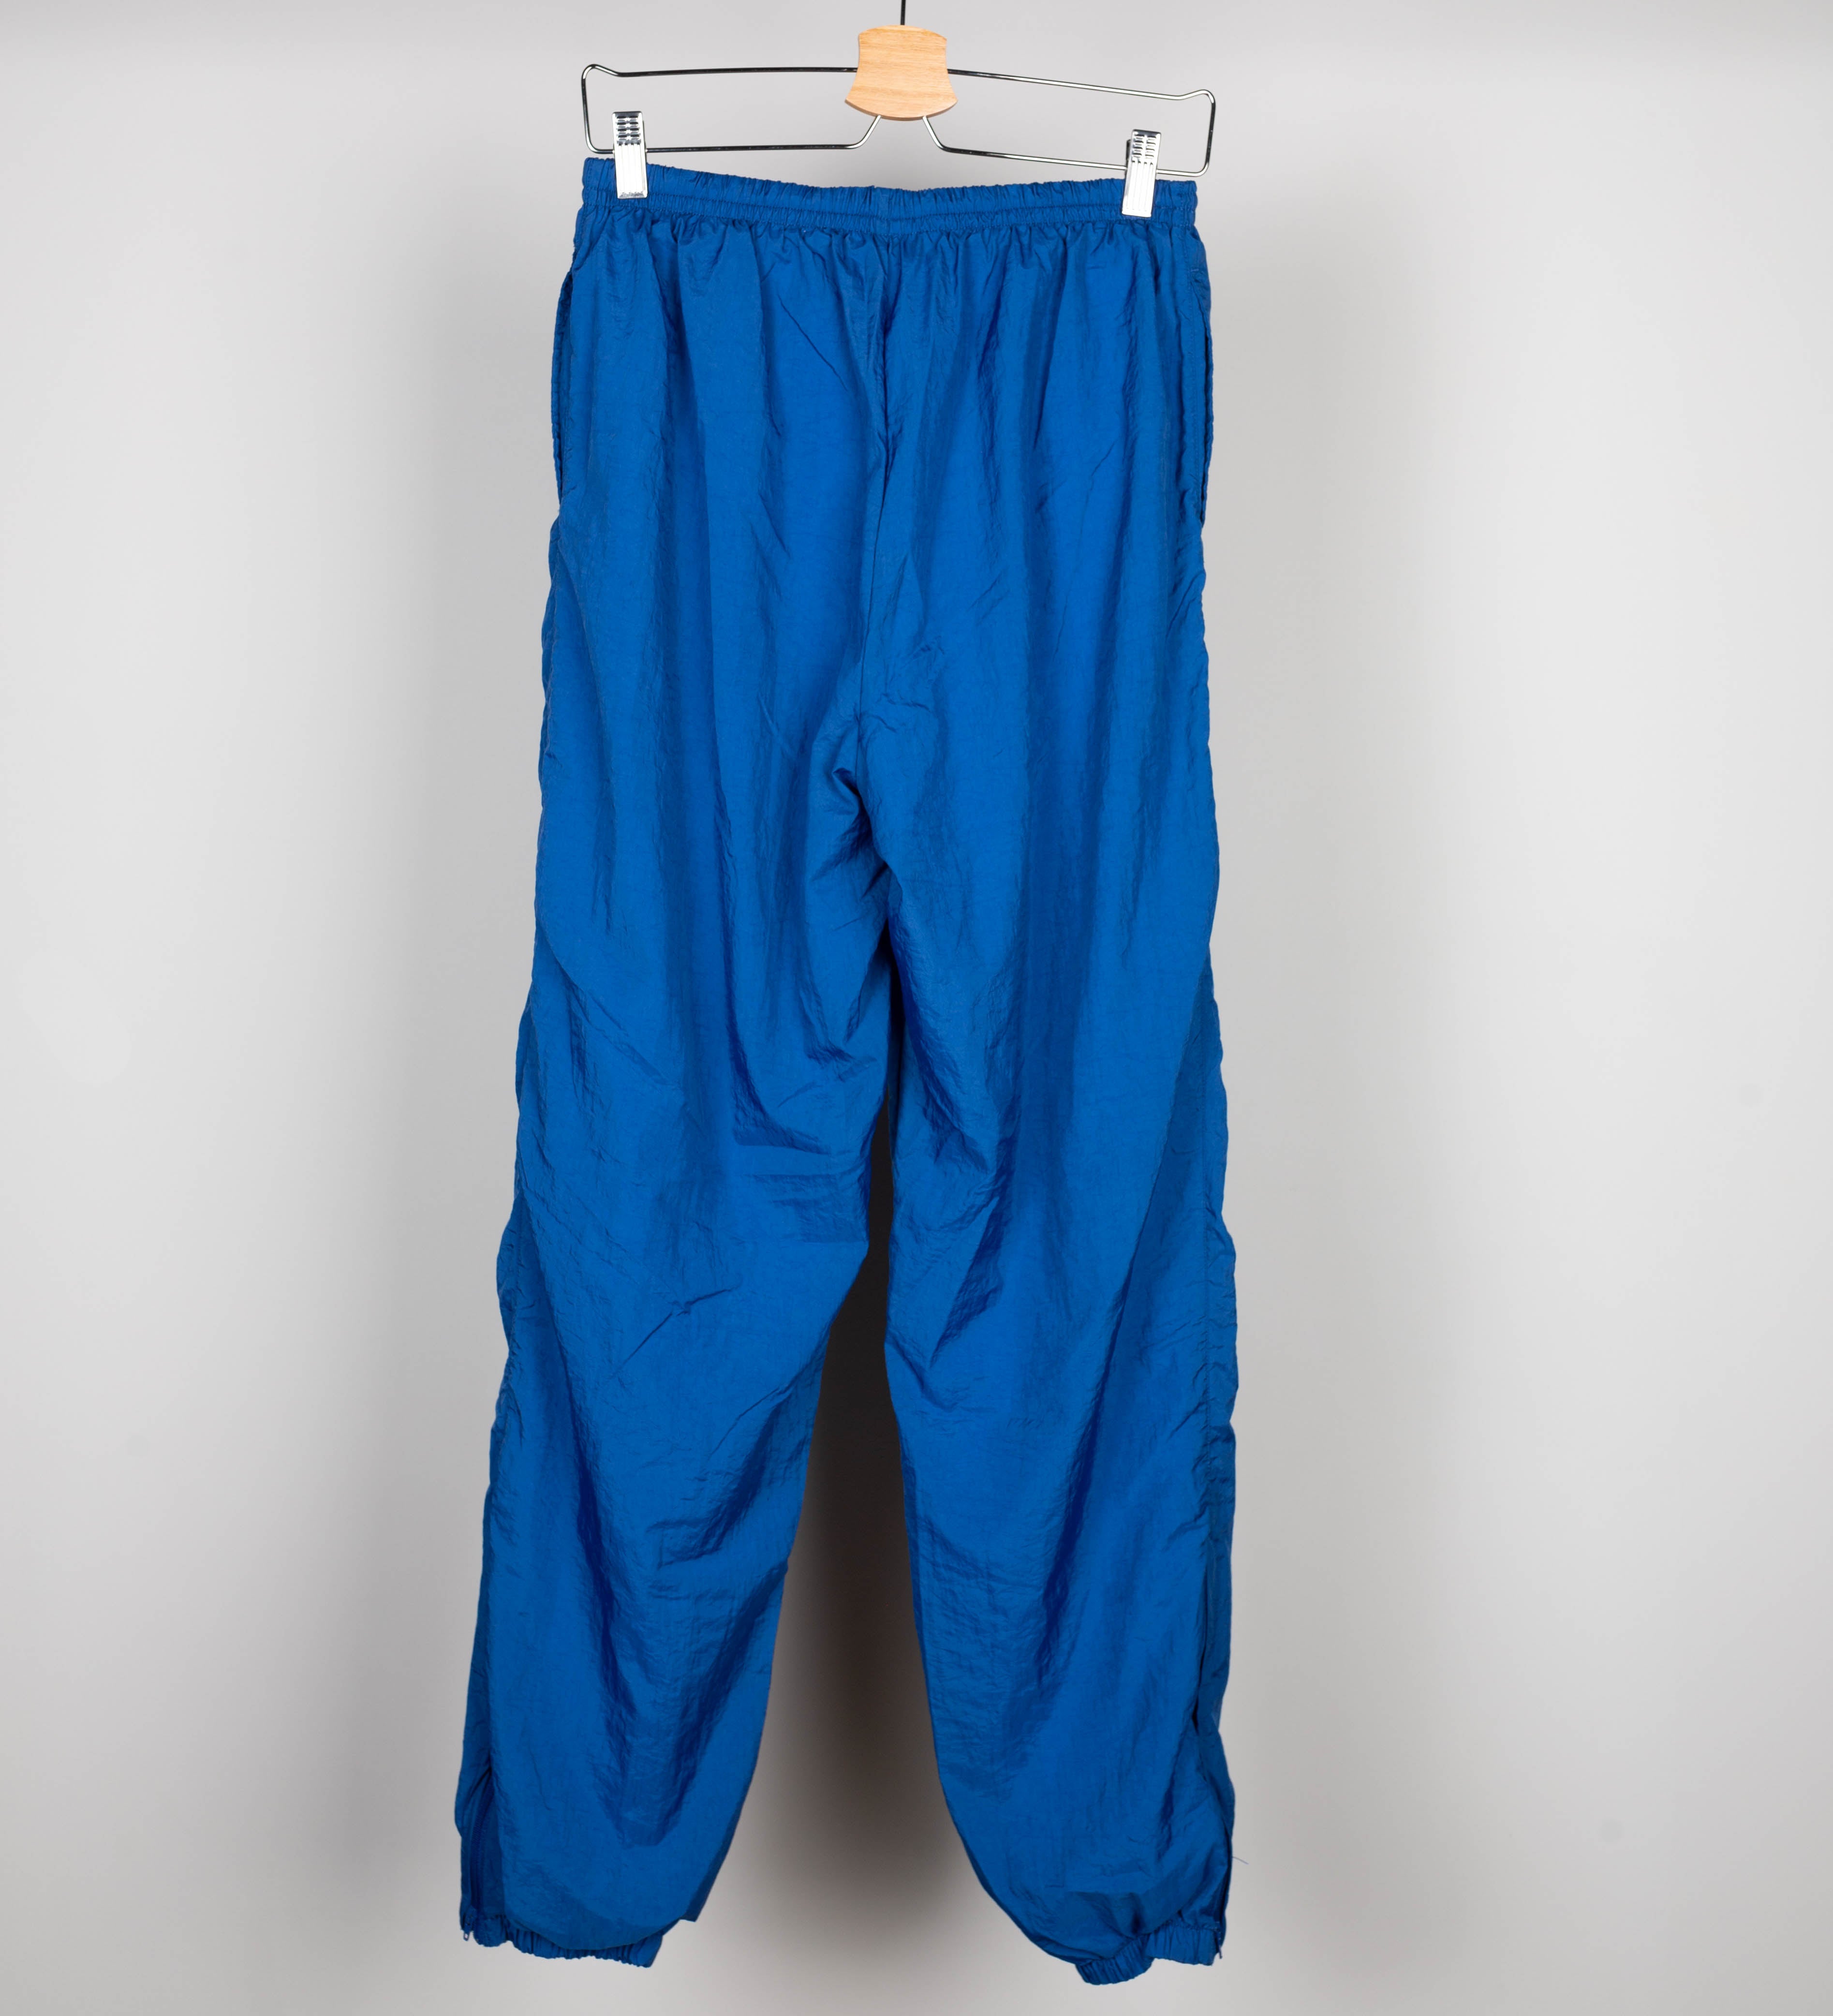 90's Blue Joggers Pants Size L